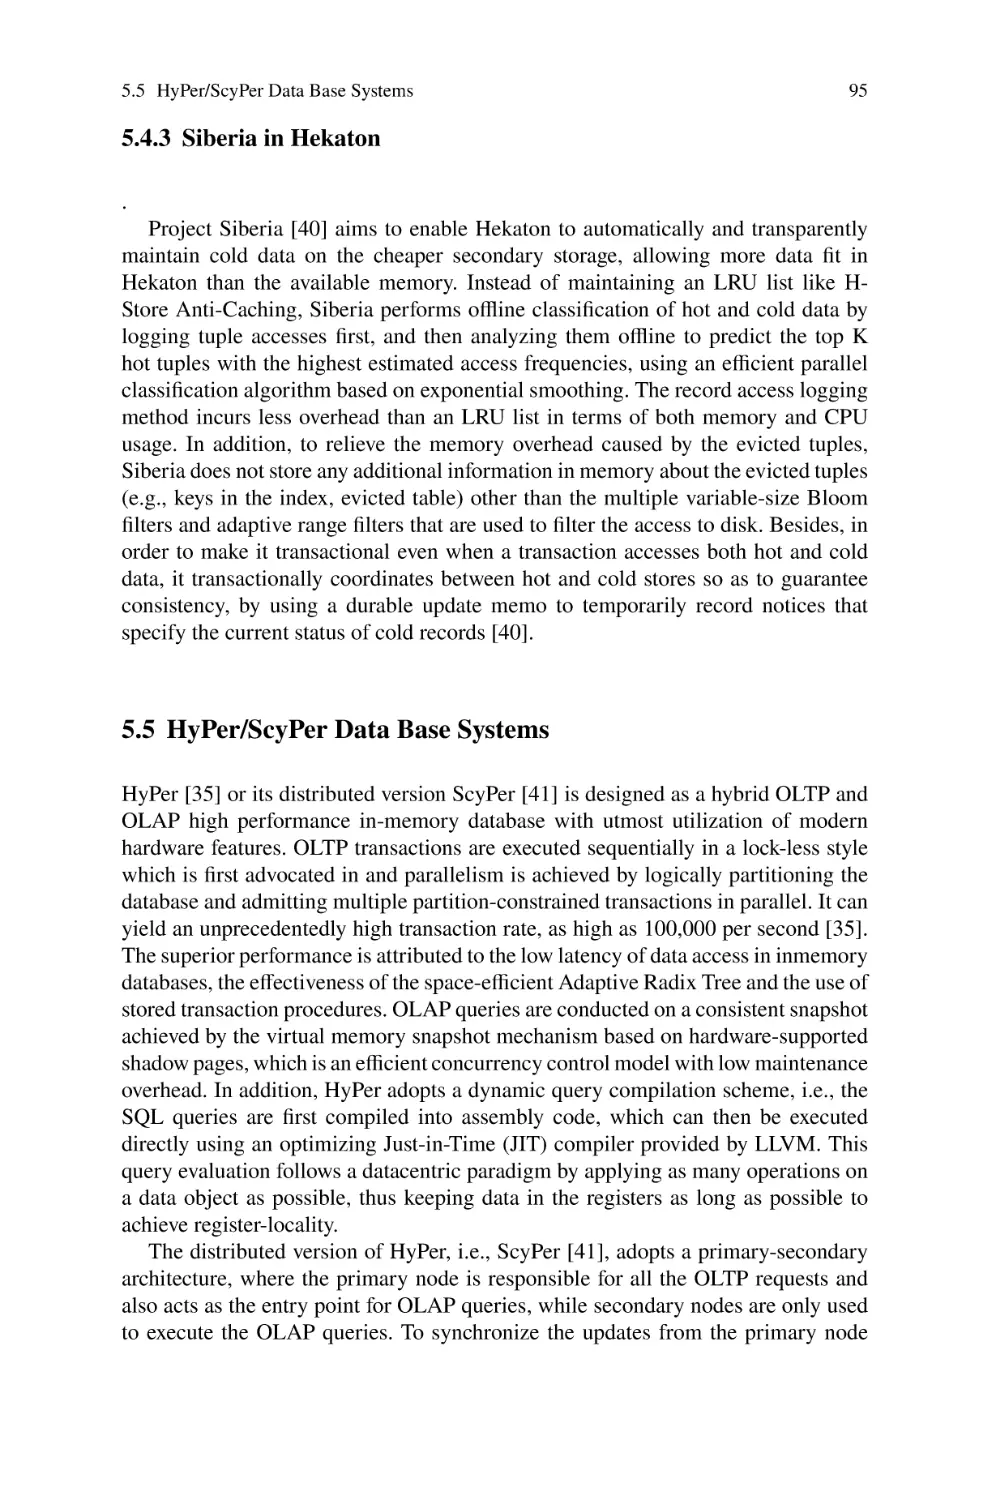 5.4.3 Siberia in Hekaton
5.5 HyPer/ScyPer Data Base Systems